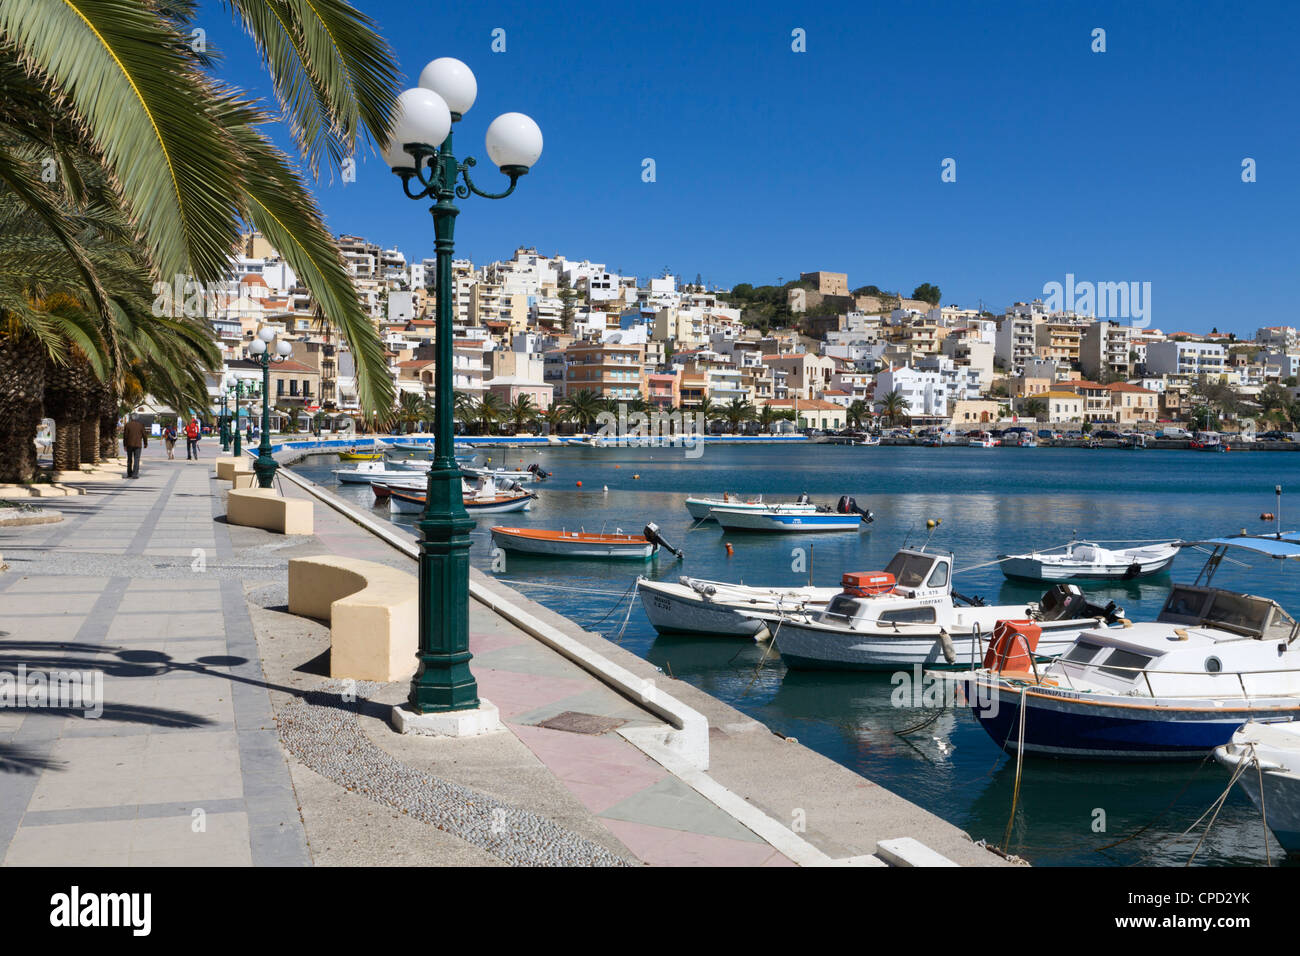 Le port, Sitia, λασίθι, Crète, îles grecques, Grèce, Europe Banque D'Images